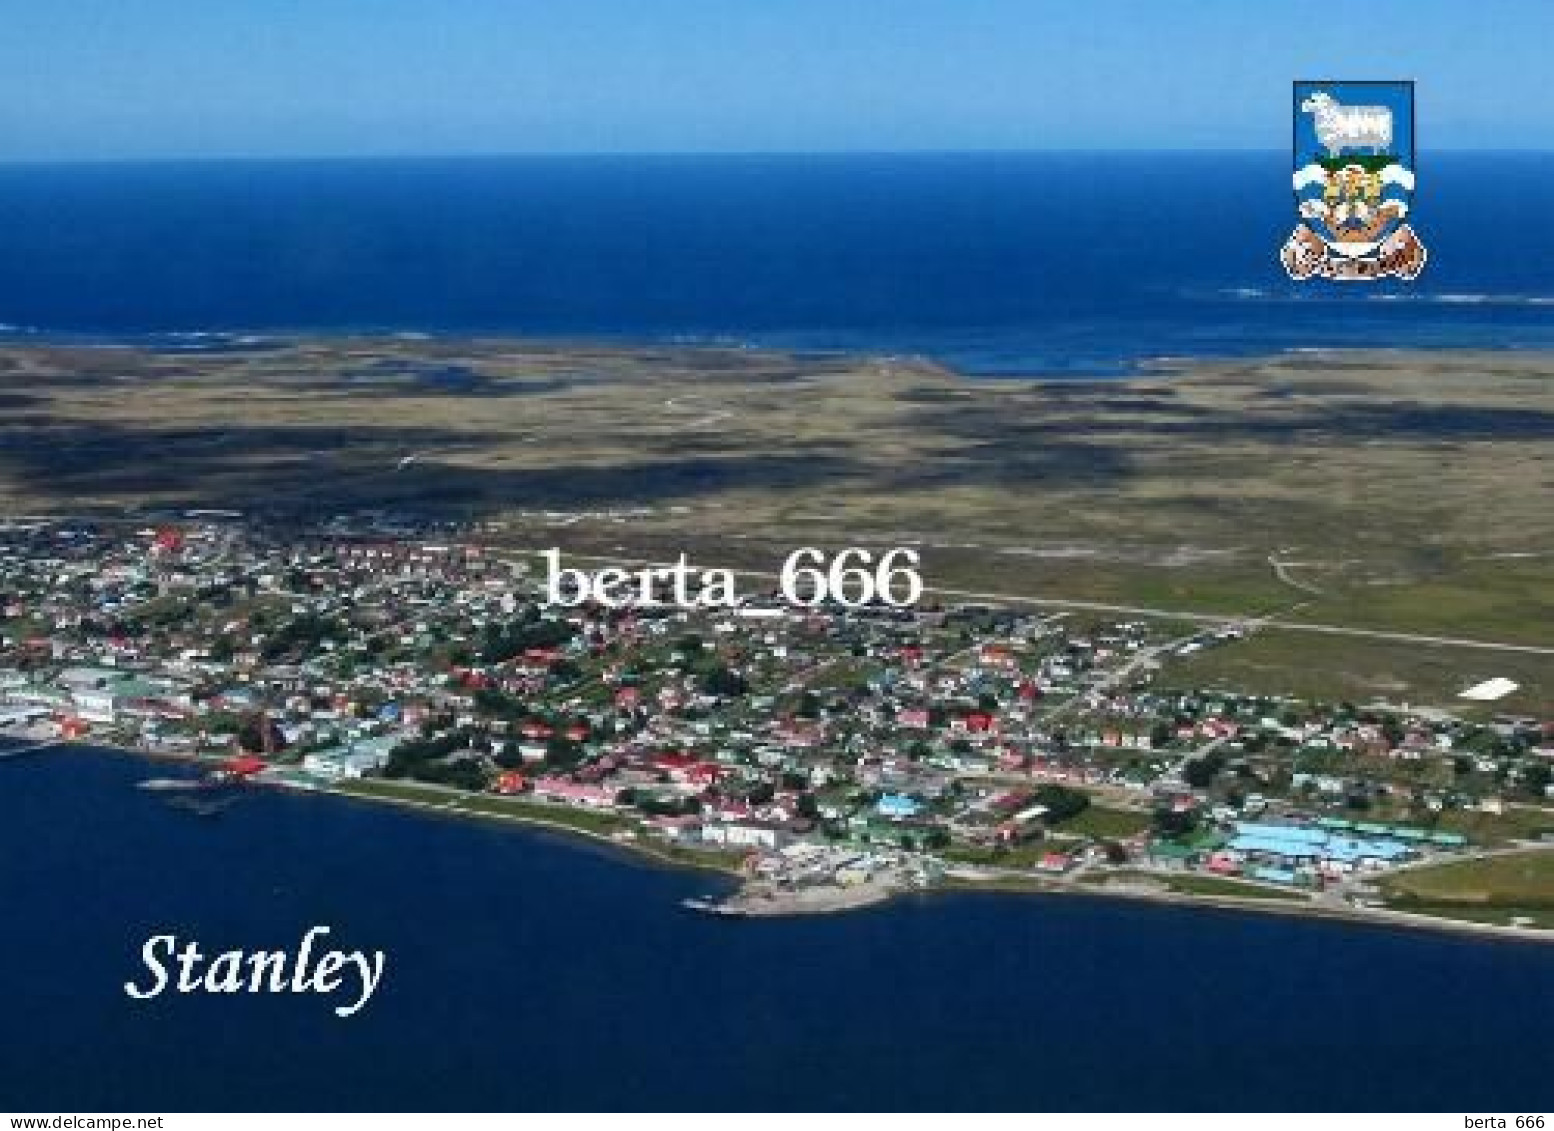 Falklands Islands Stanley Aerial View Malvinas New Postcard - Falklandeilanden